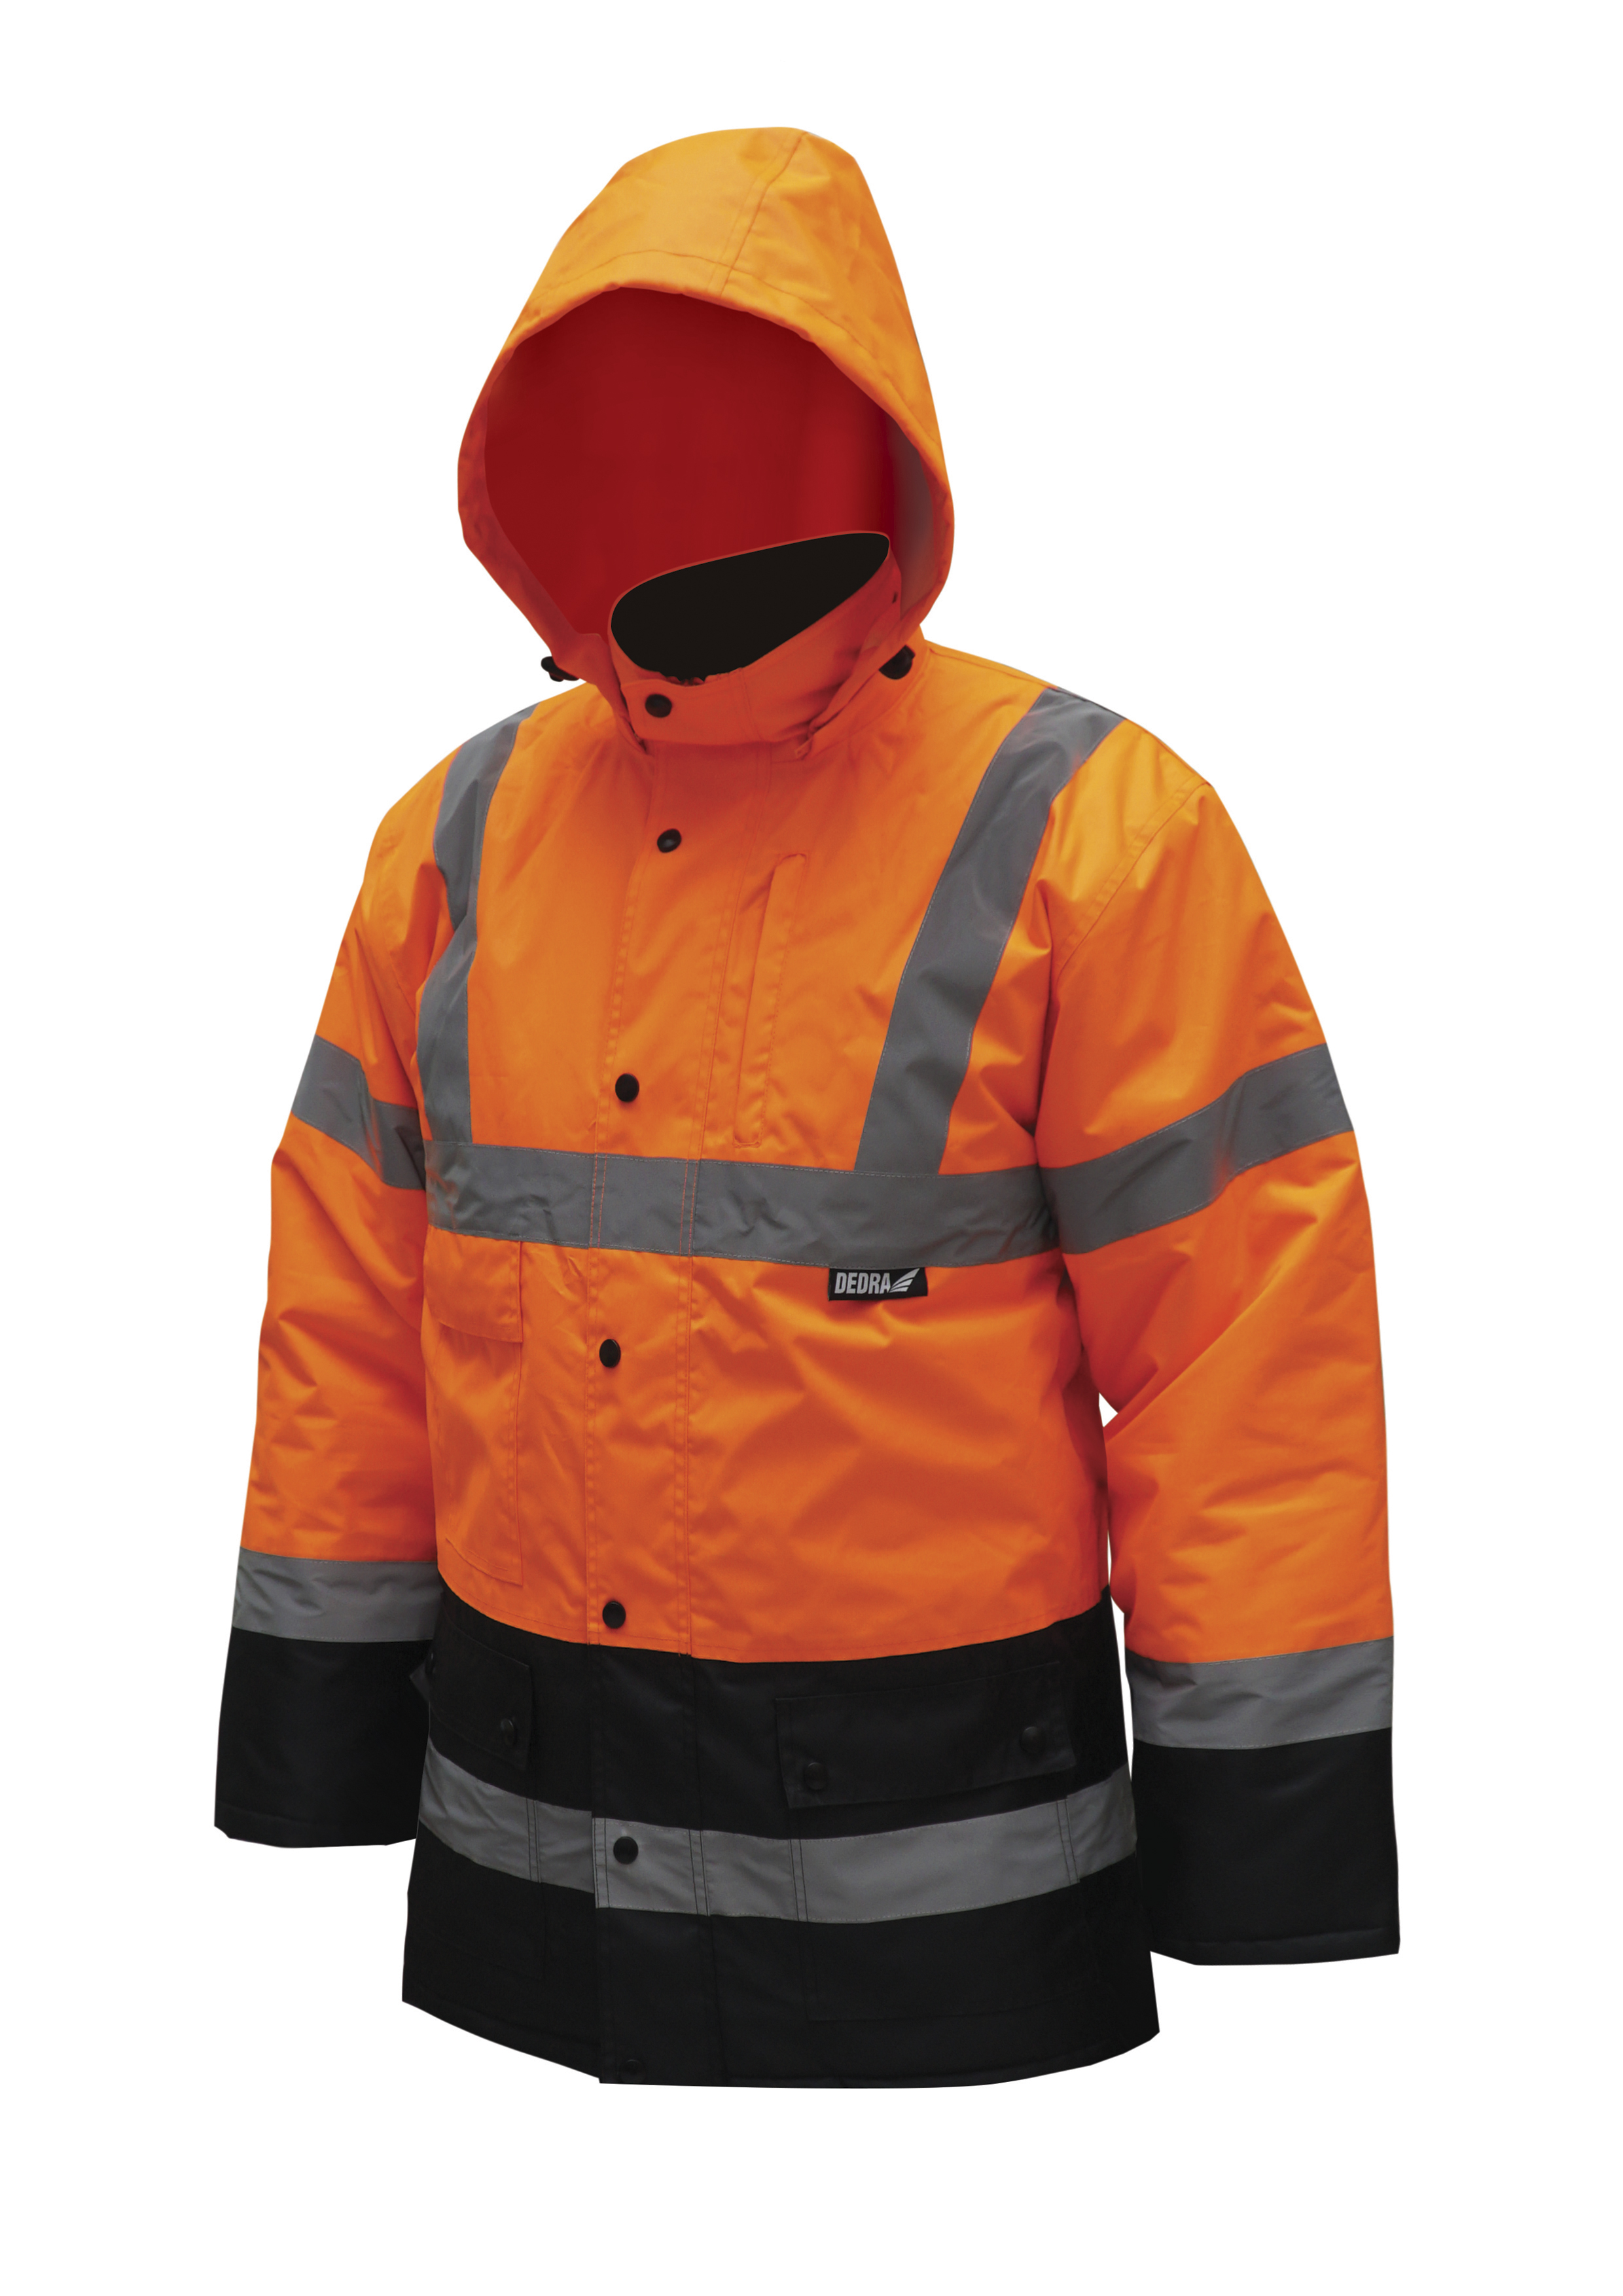 Reflexní zateplená bunda parka,velikost L,oranžová DEDRA BH80K4-L + Dárek, servis bez starostí v hodnotě 300Kč